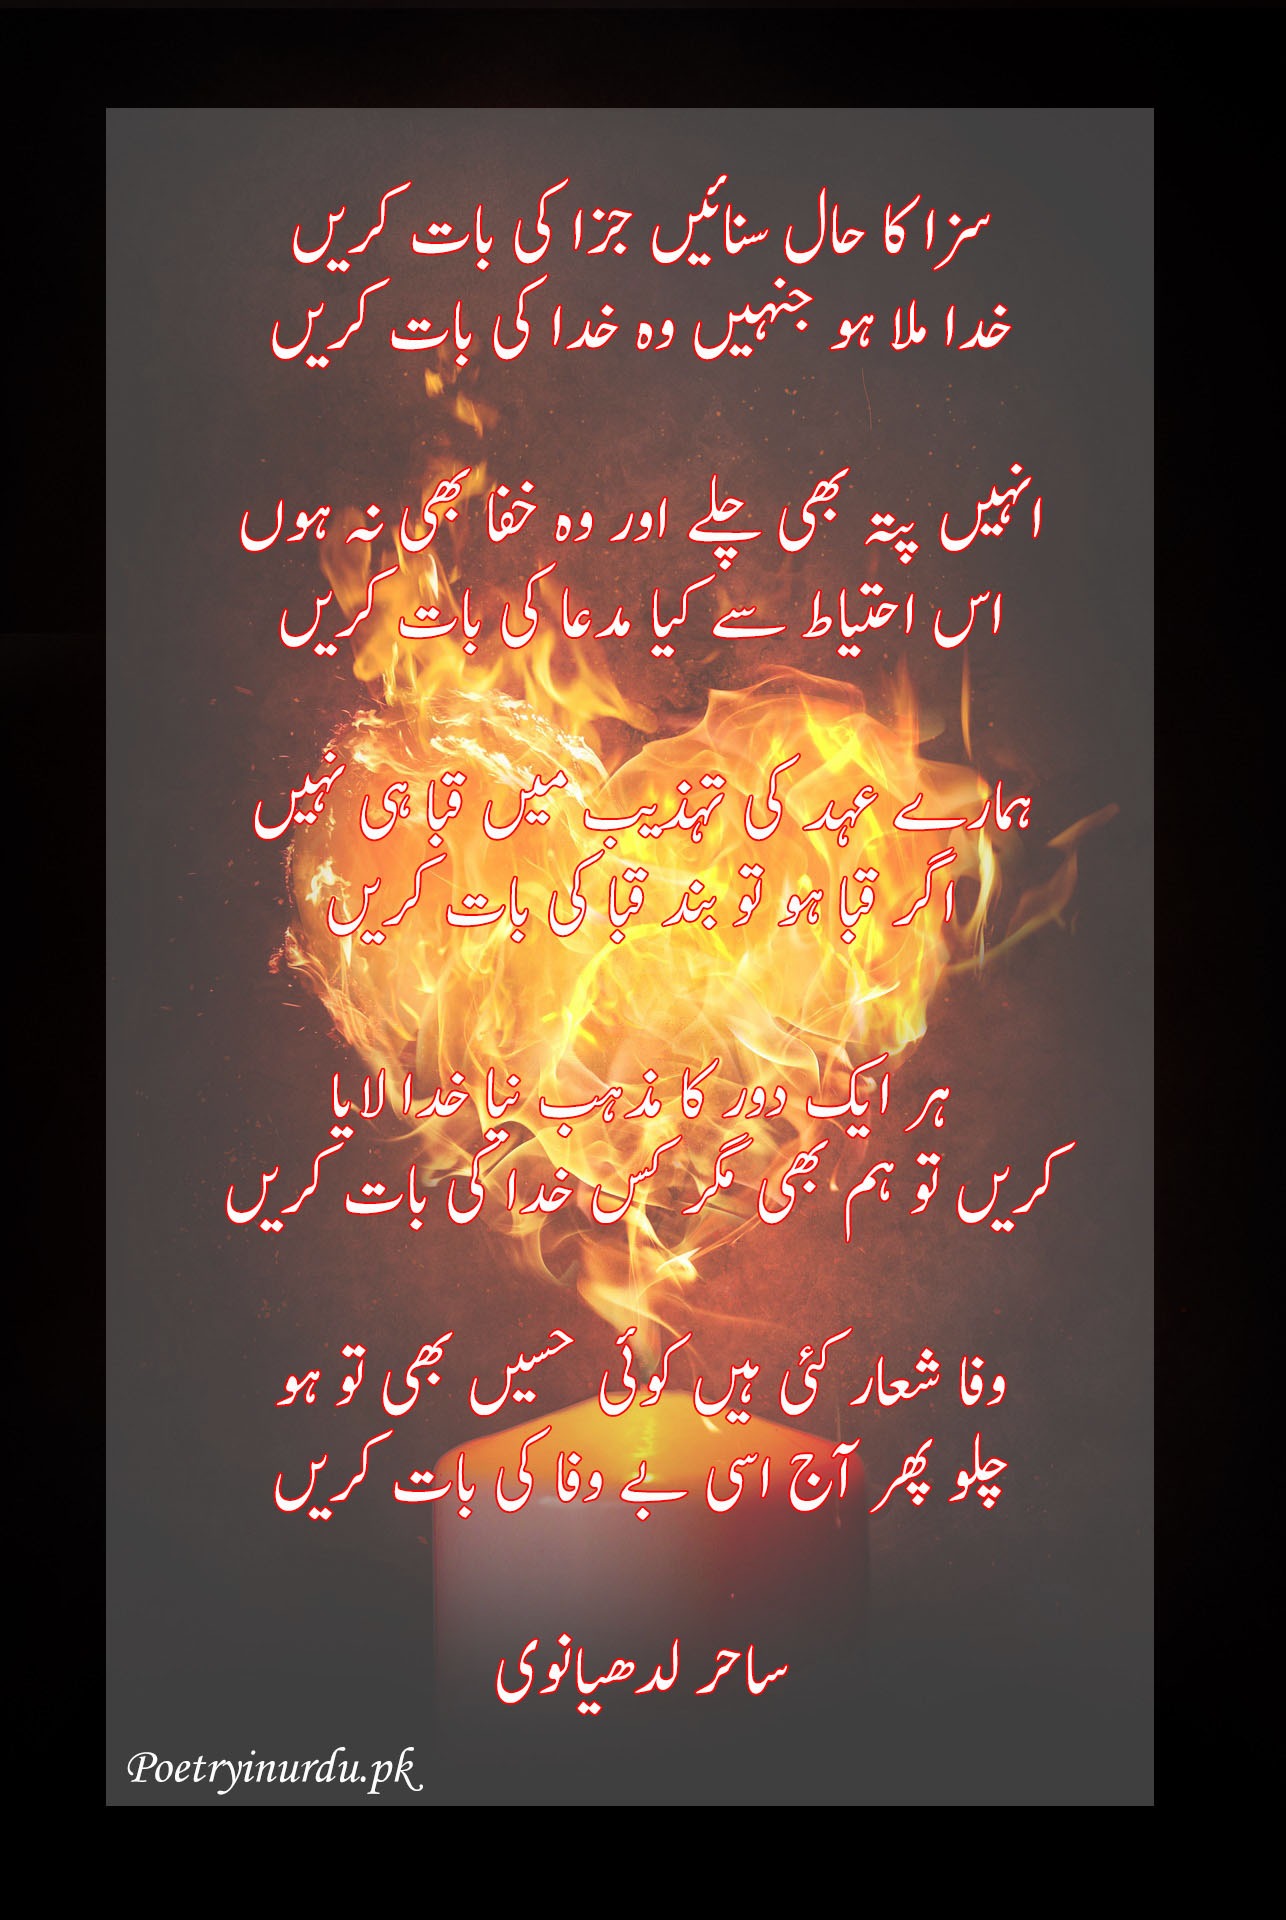 bewafa poetry ghazal